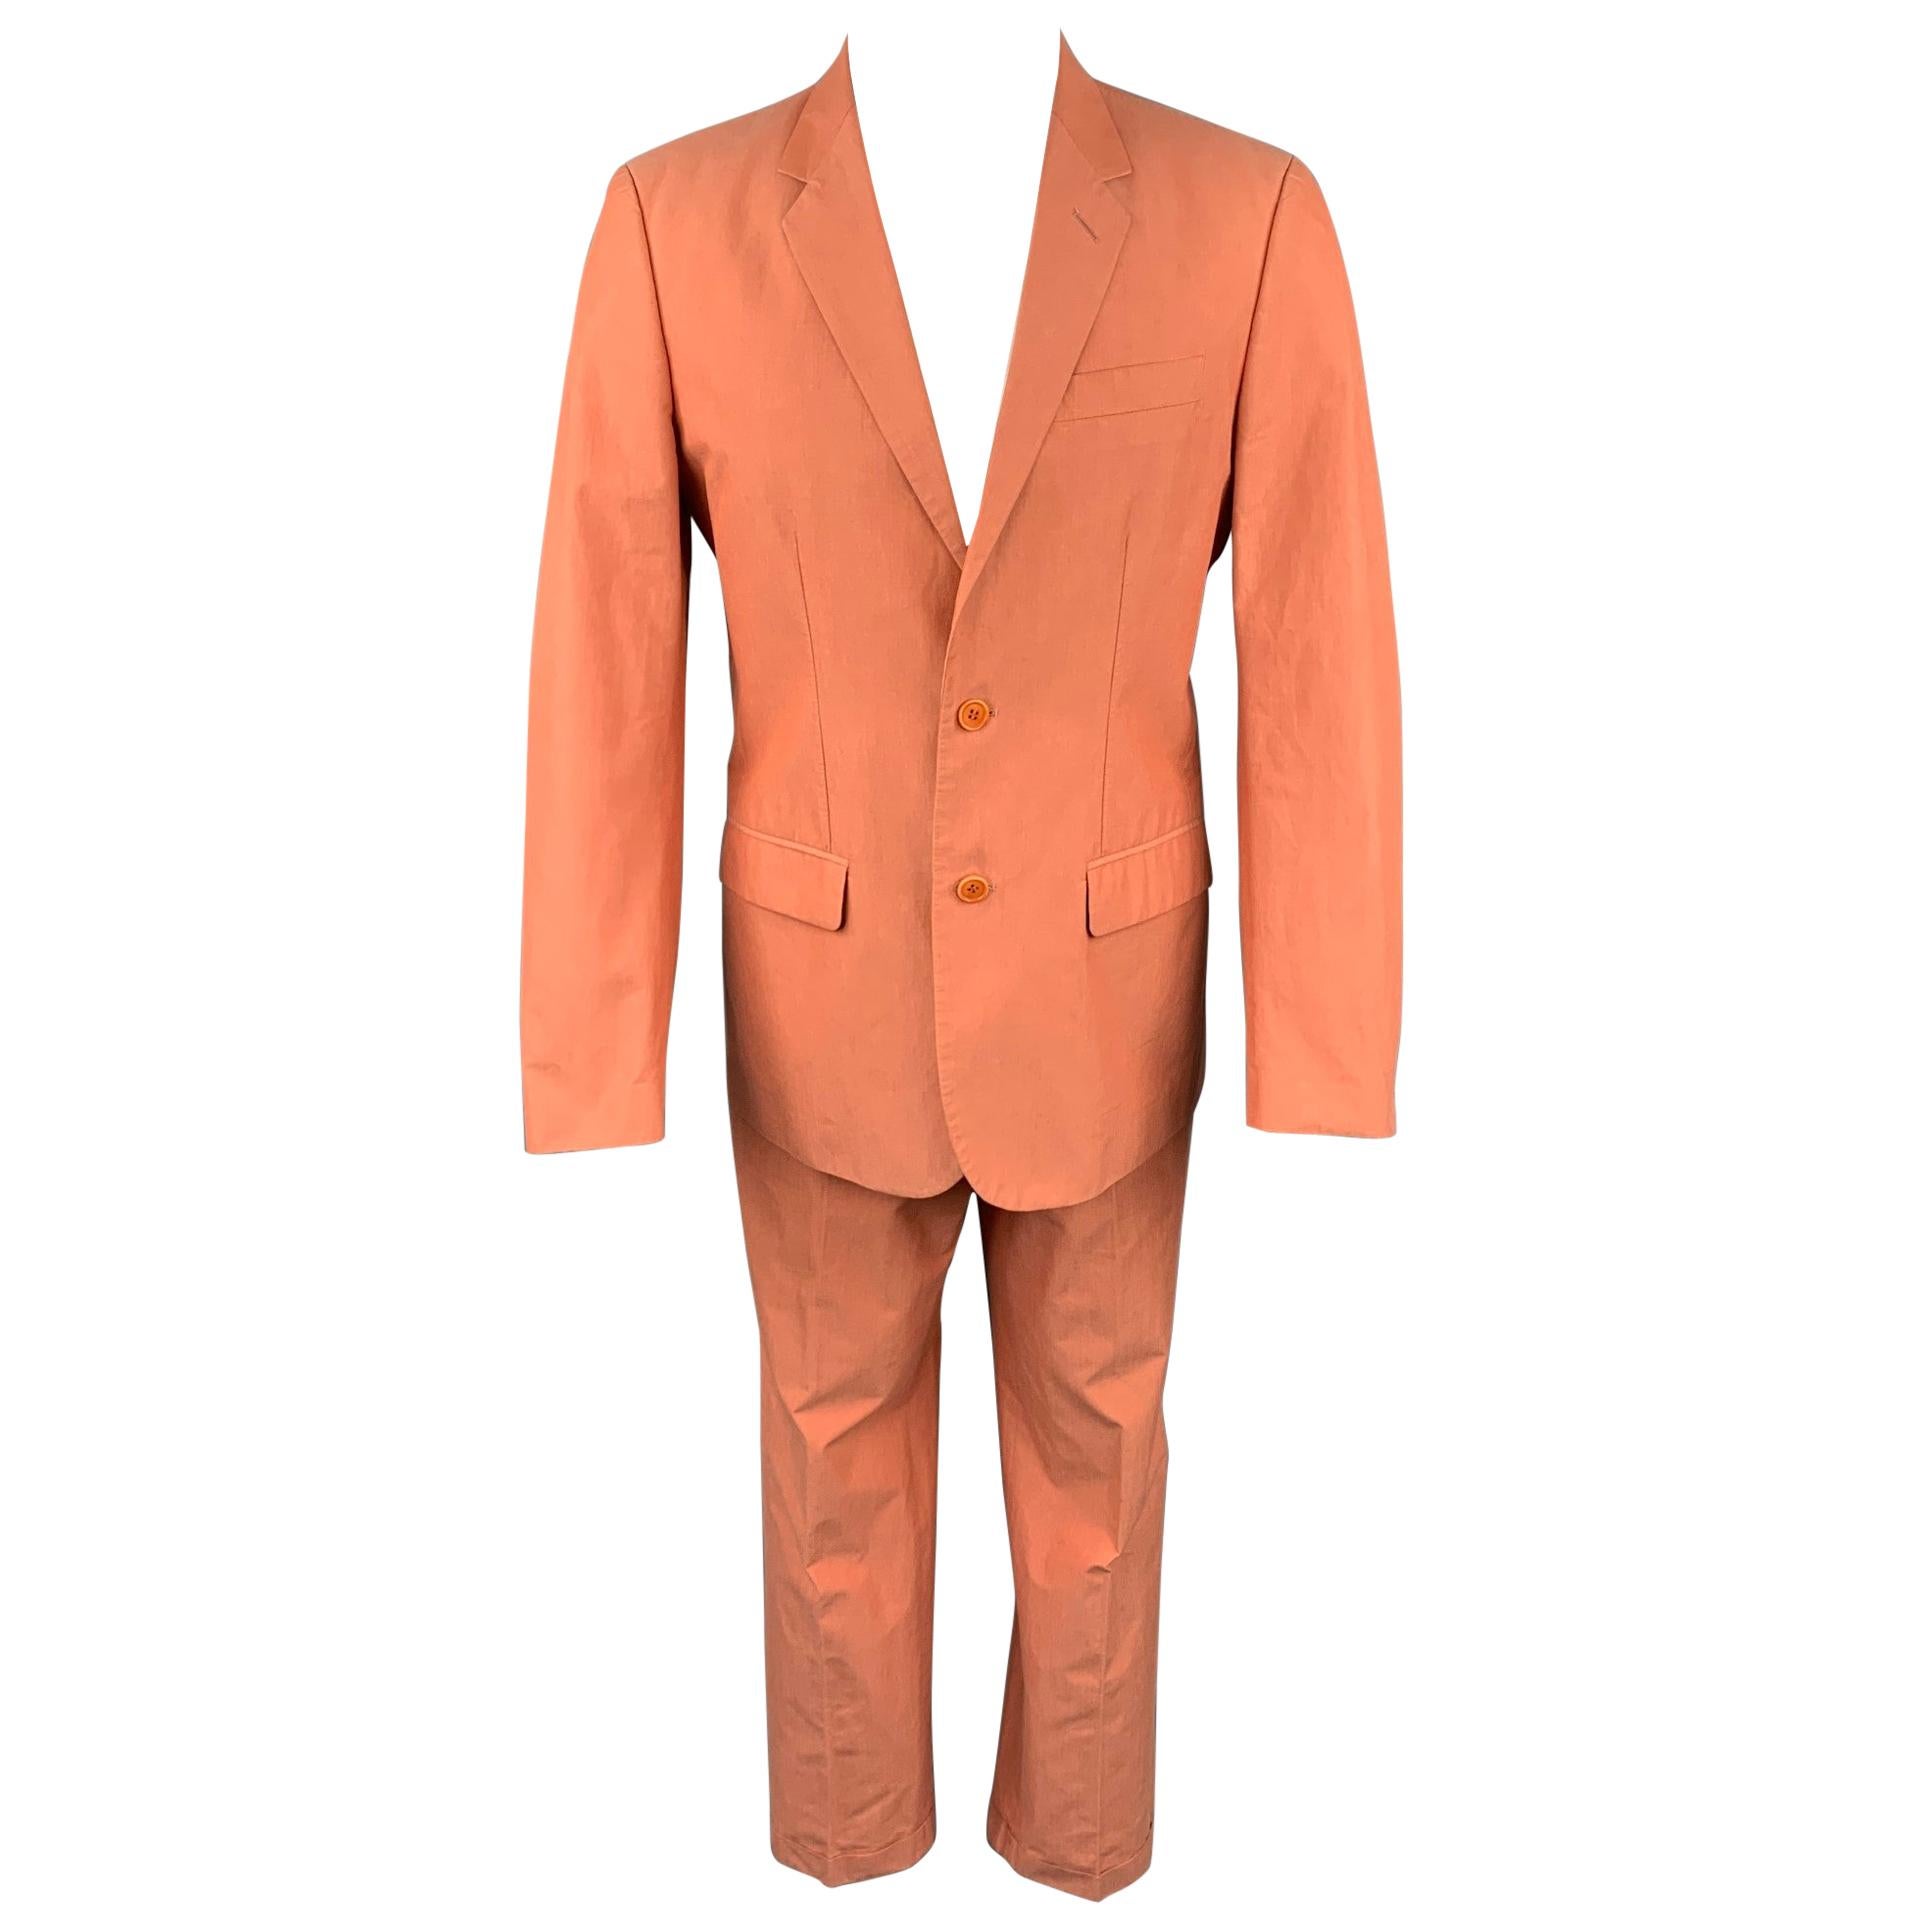 Vintage HELMUT LANG Size 38 Coral Cotton Notch Lapel Suit